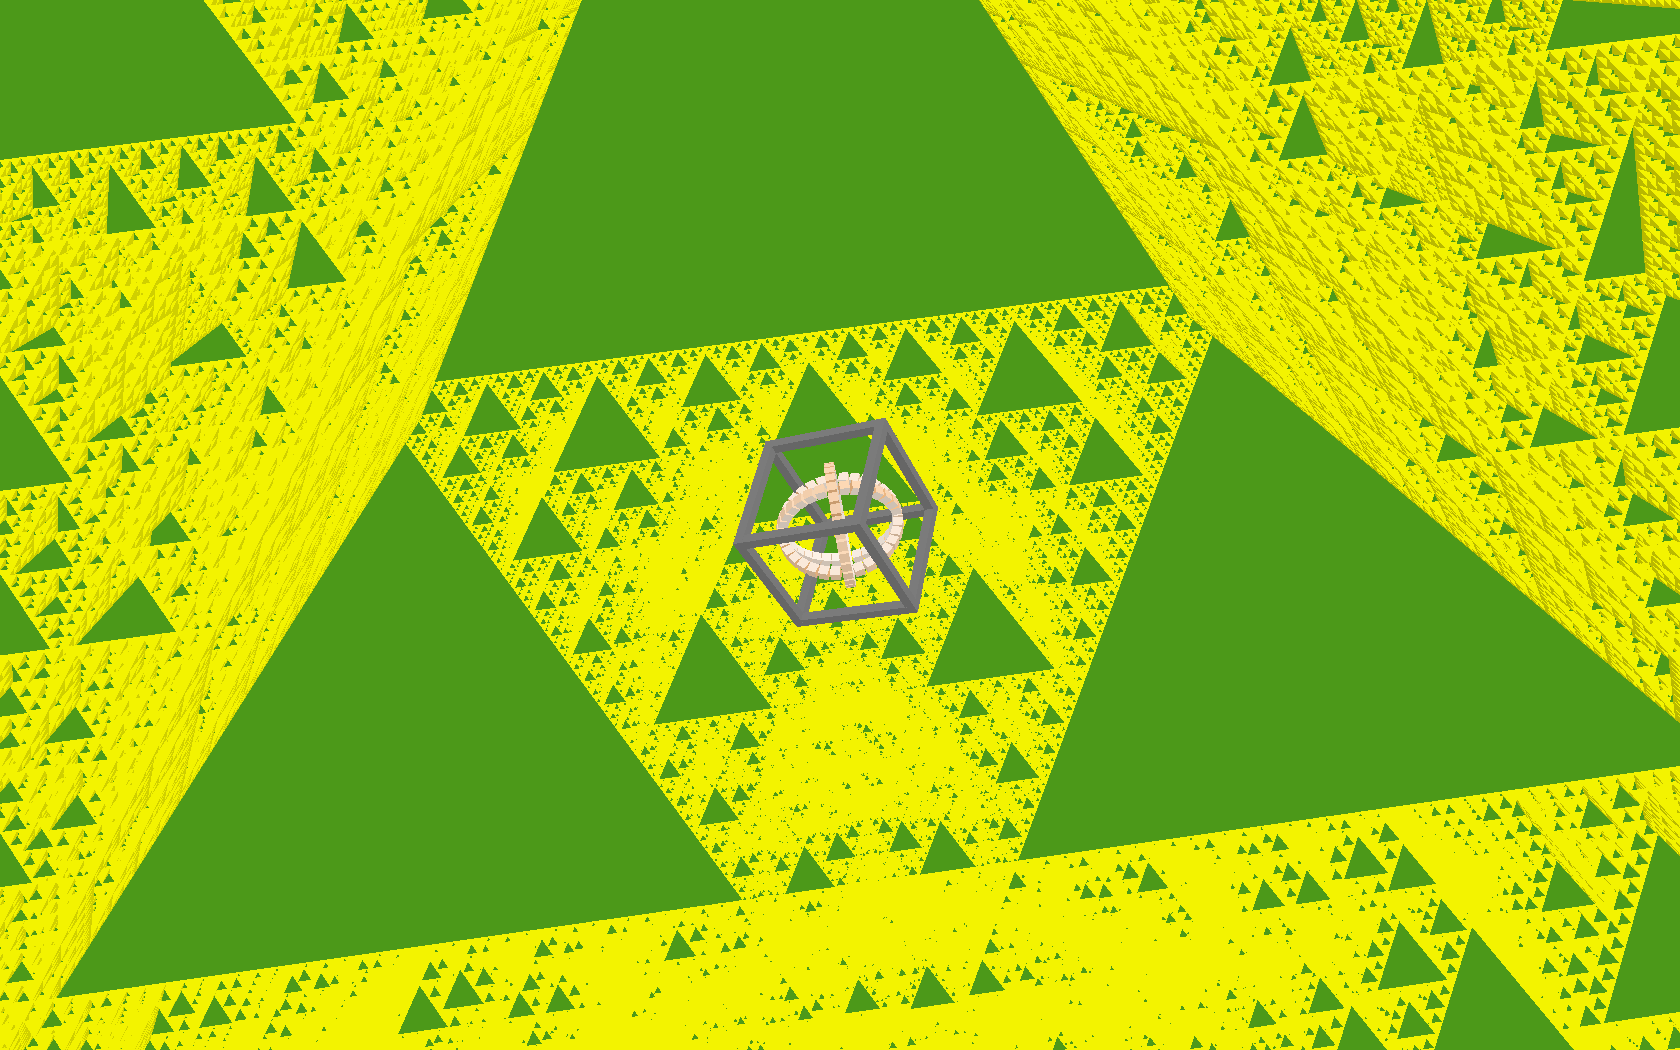 The tetrix, aka Siepinski Tetrahedron